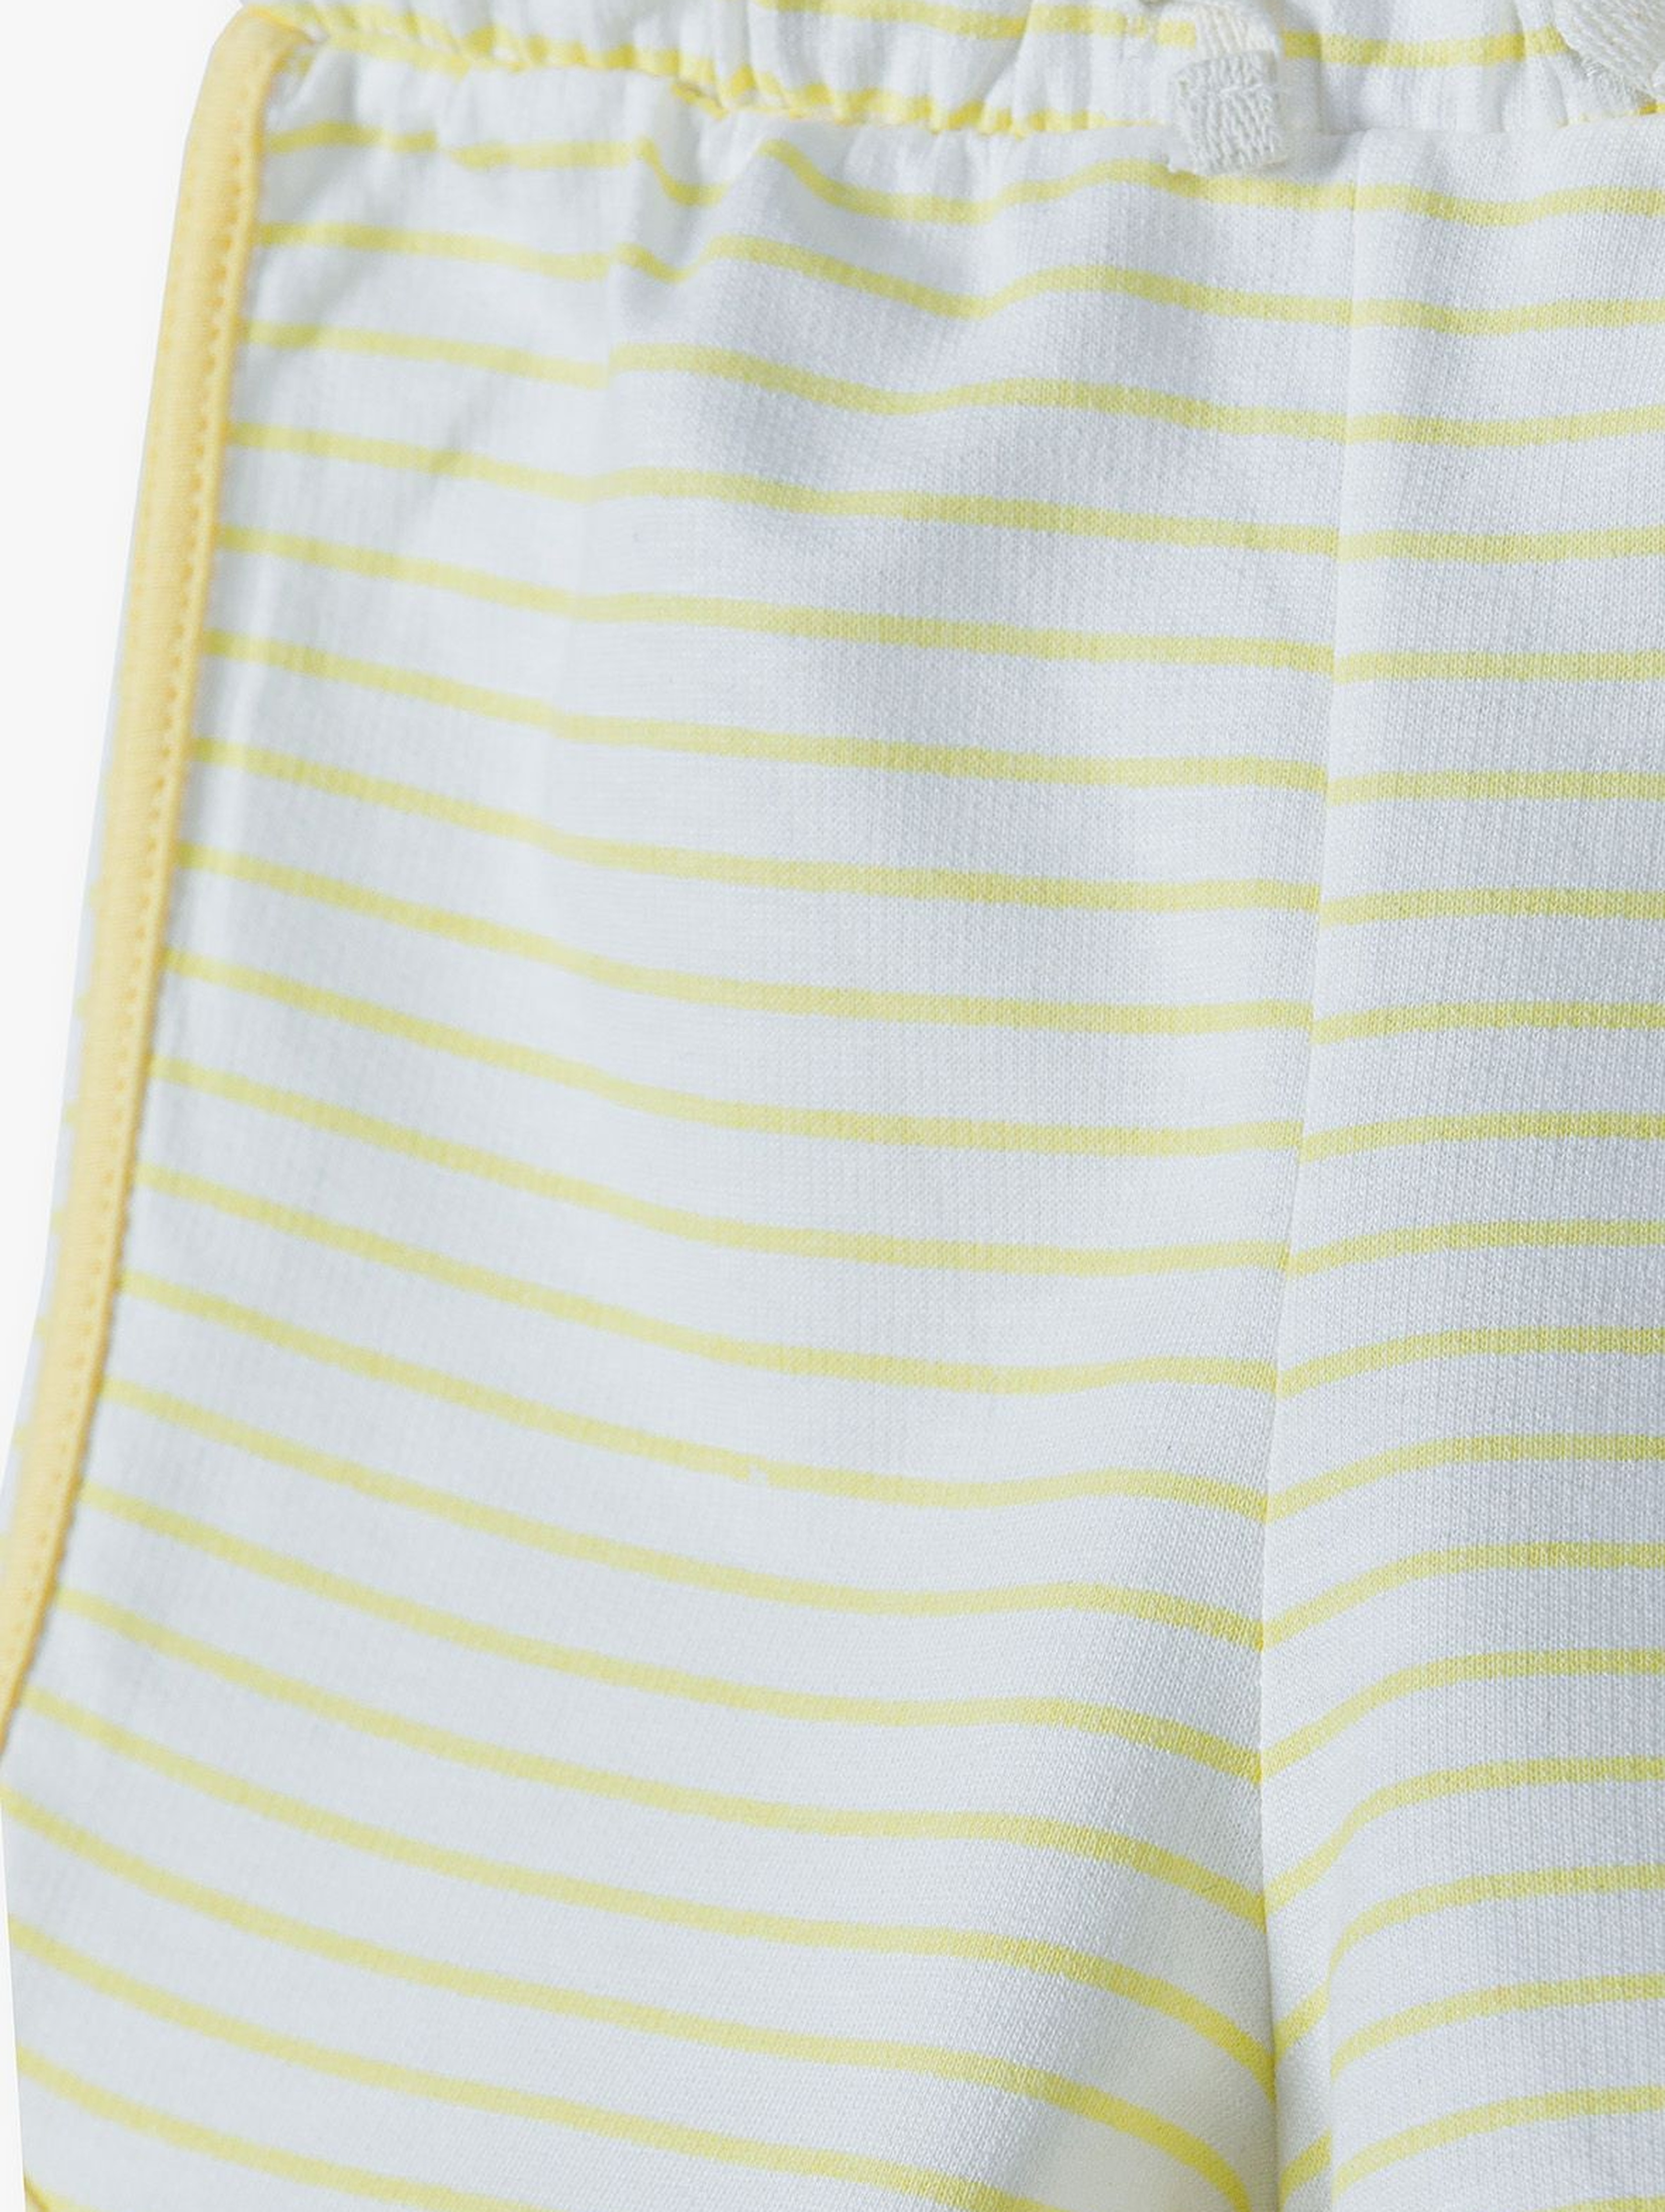 Bawełniane szorty dla niemowlaka - żółte